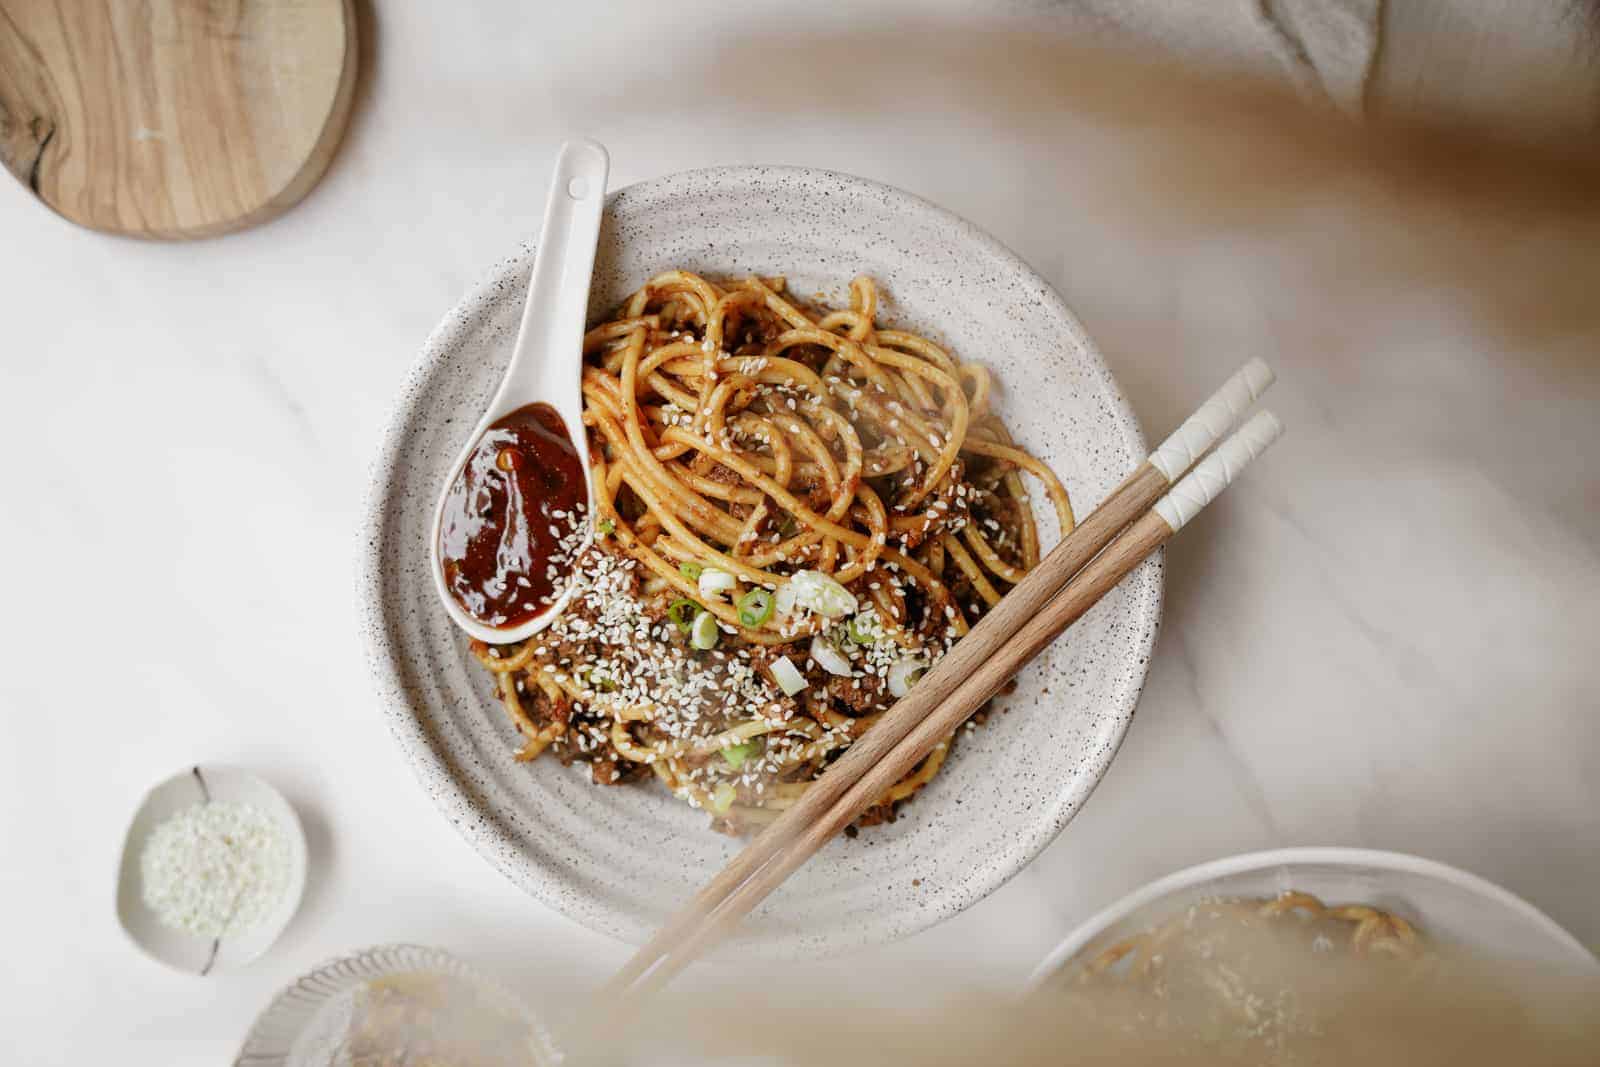 Vegan dan dan noodles in a white bowl with chopsticks.